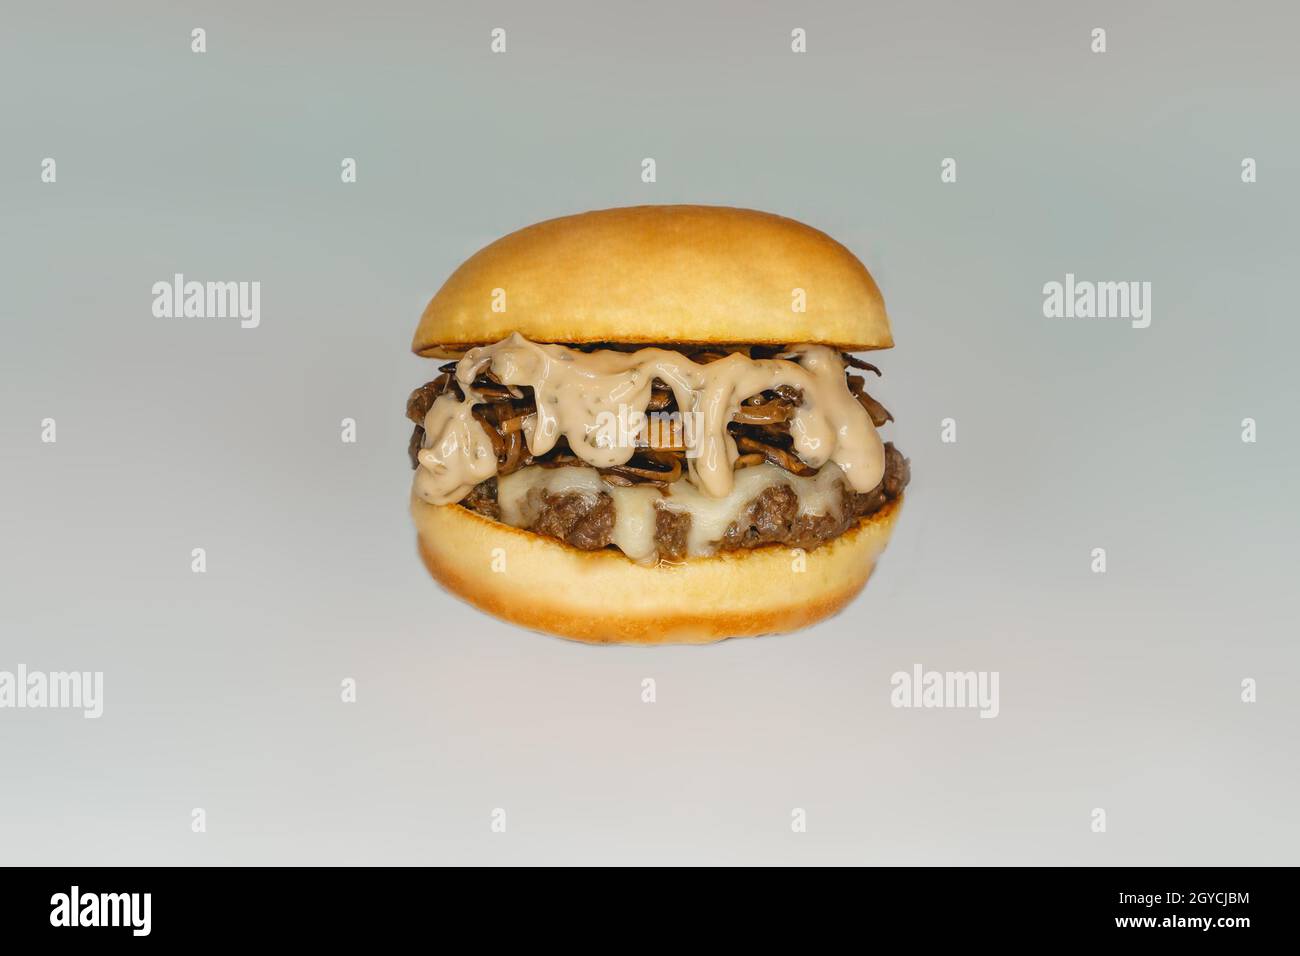 Gros plan d'un délicieux hamburger à la truffe sur fond blanc Banque D'Images